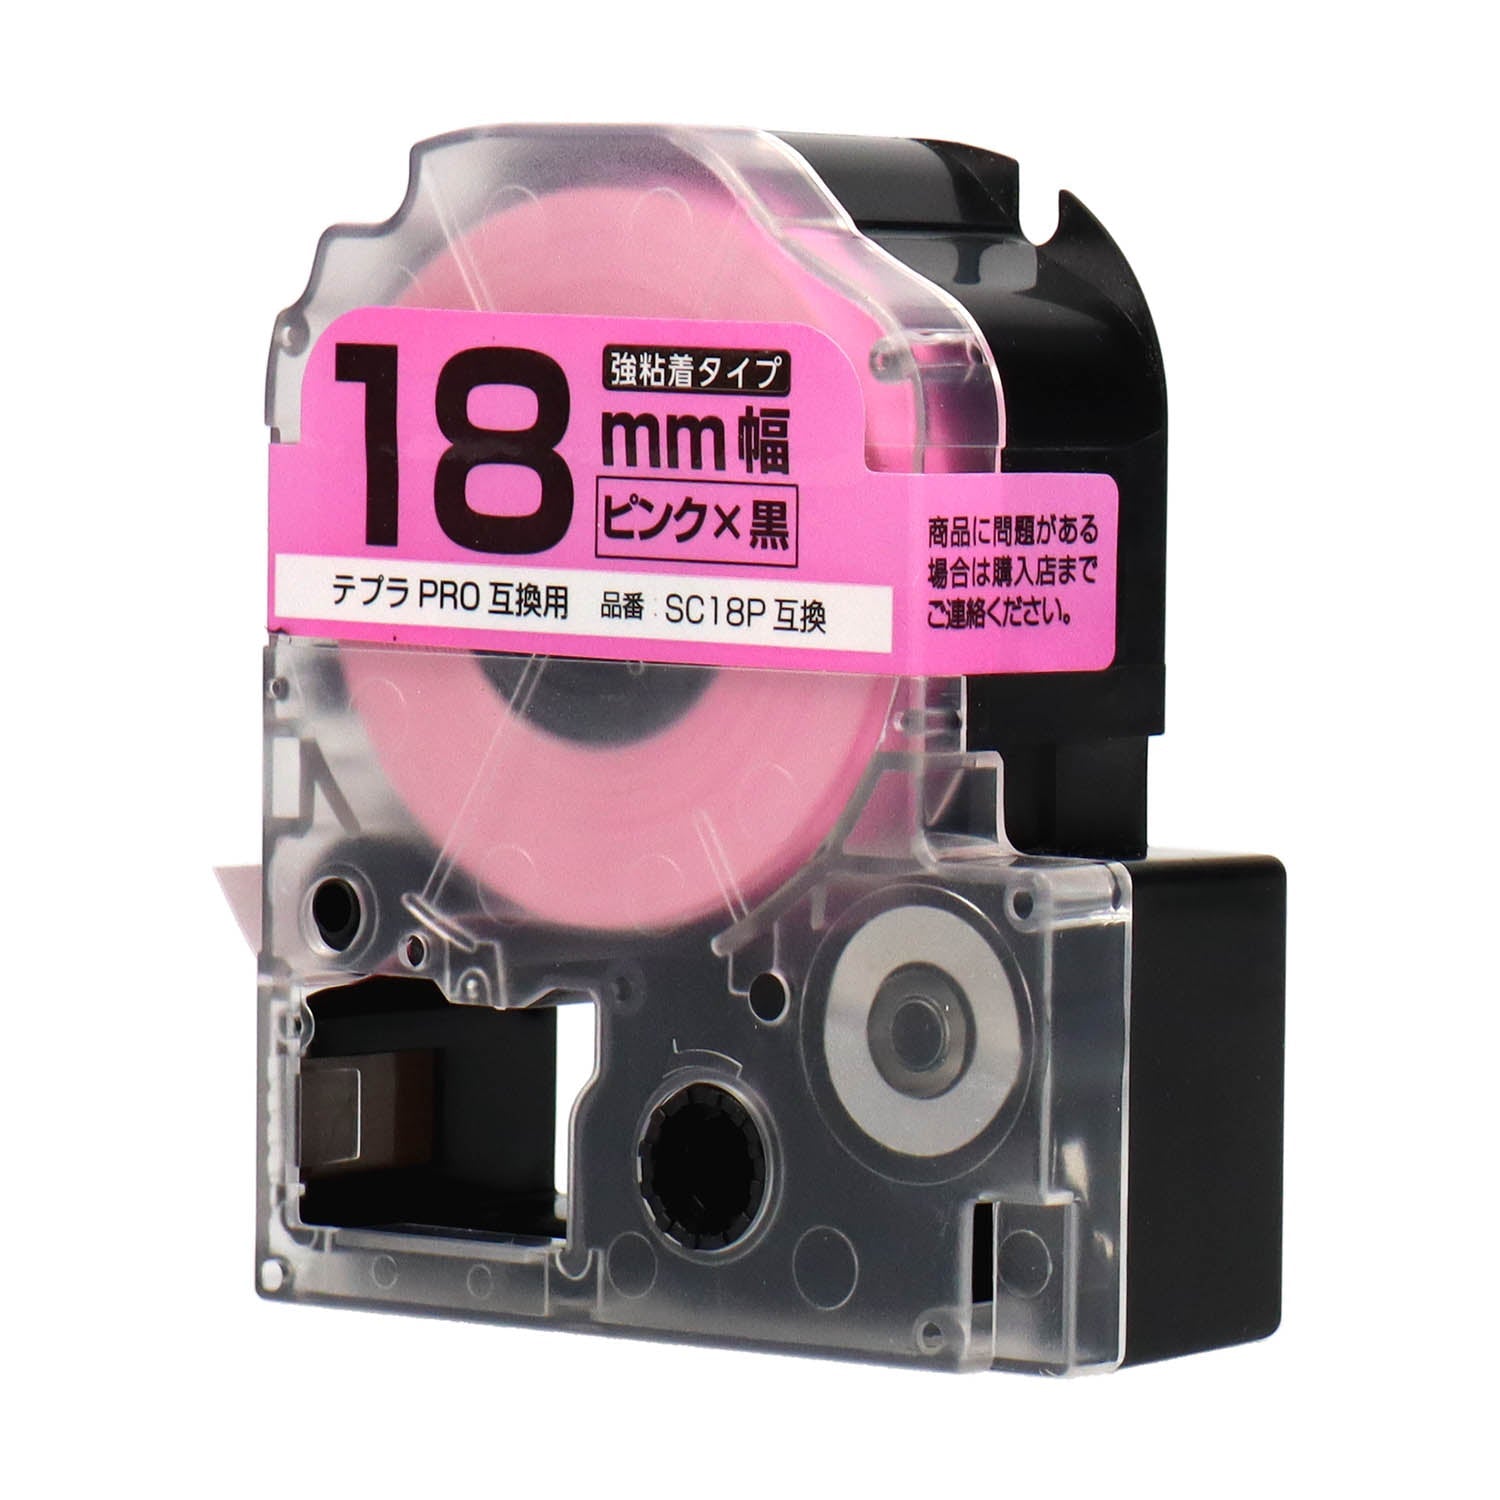 テプラPRO用互換テープカートリッジ ピンク×黒文字 18mm